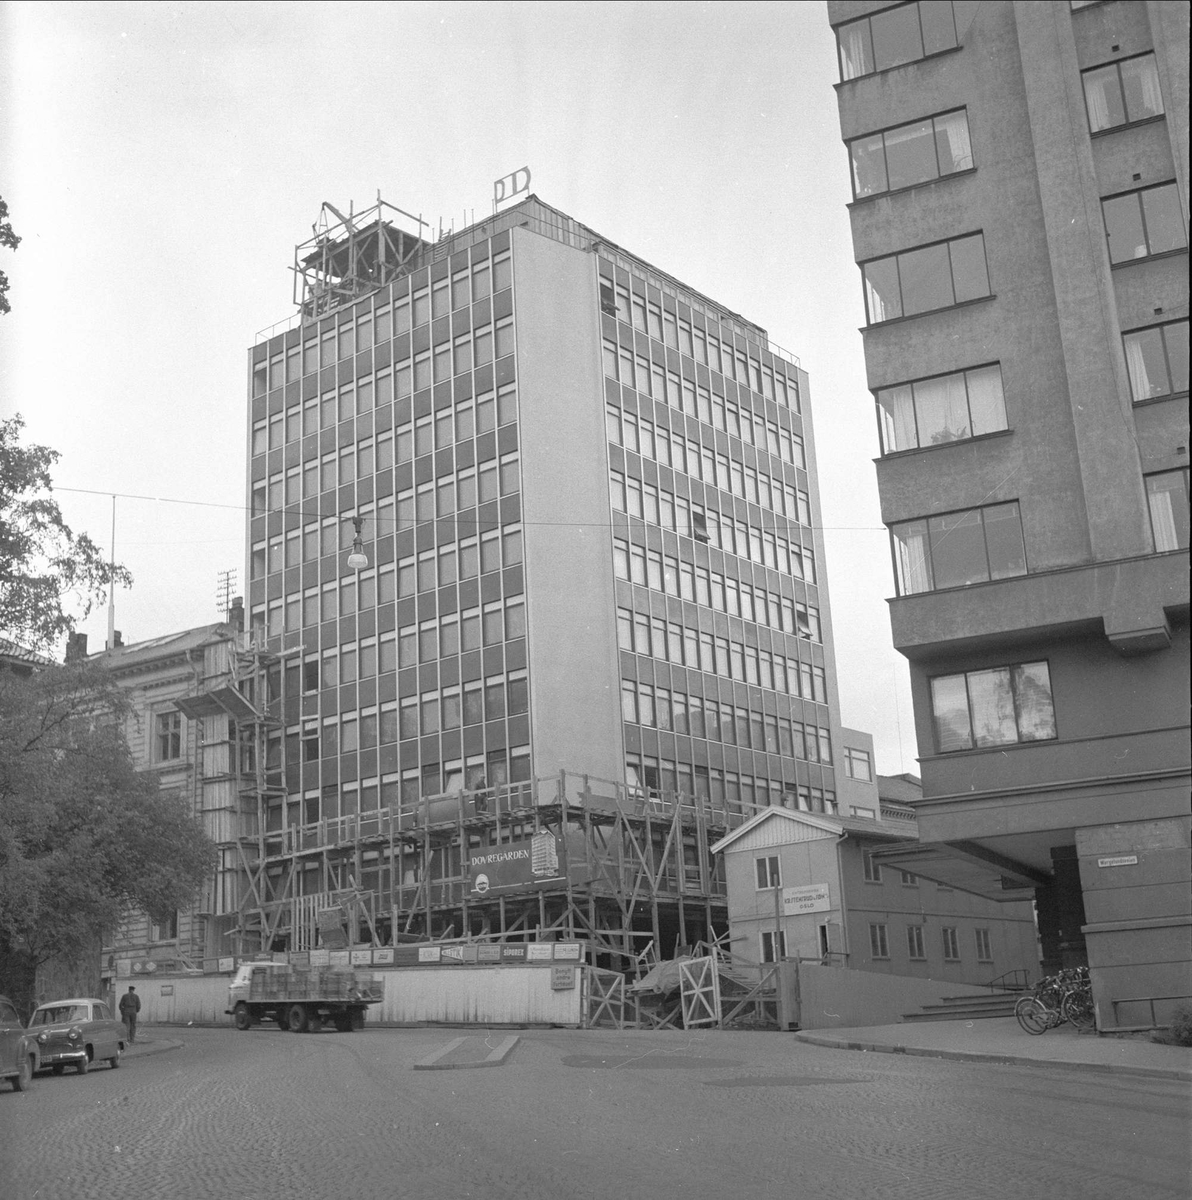 Wergelandsveien 7, Oslo,september 1958. Dovrebygget. Gatebilde med bygninger og biler. Byggearbeider.